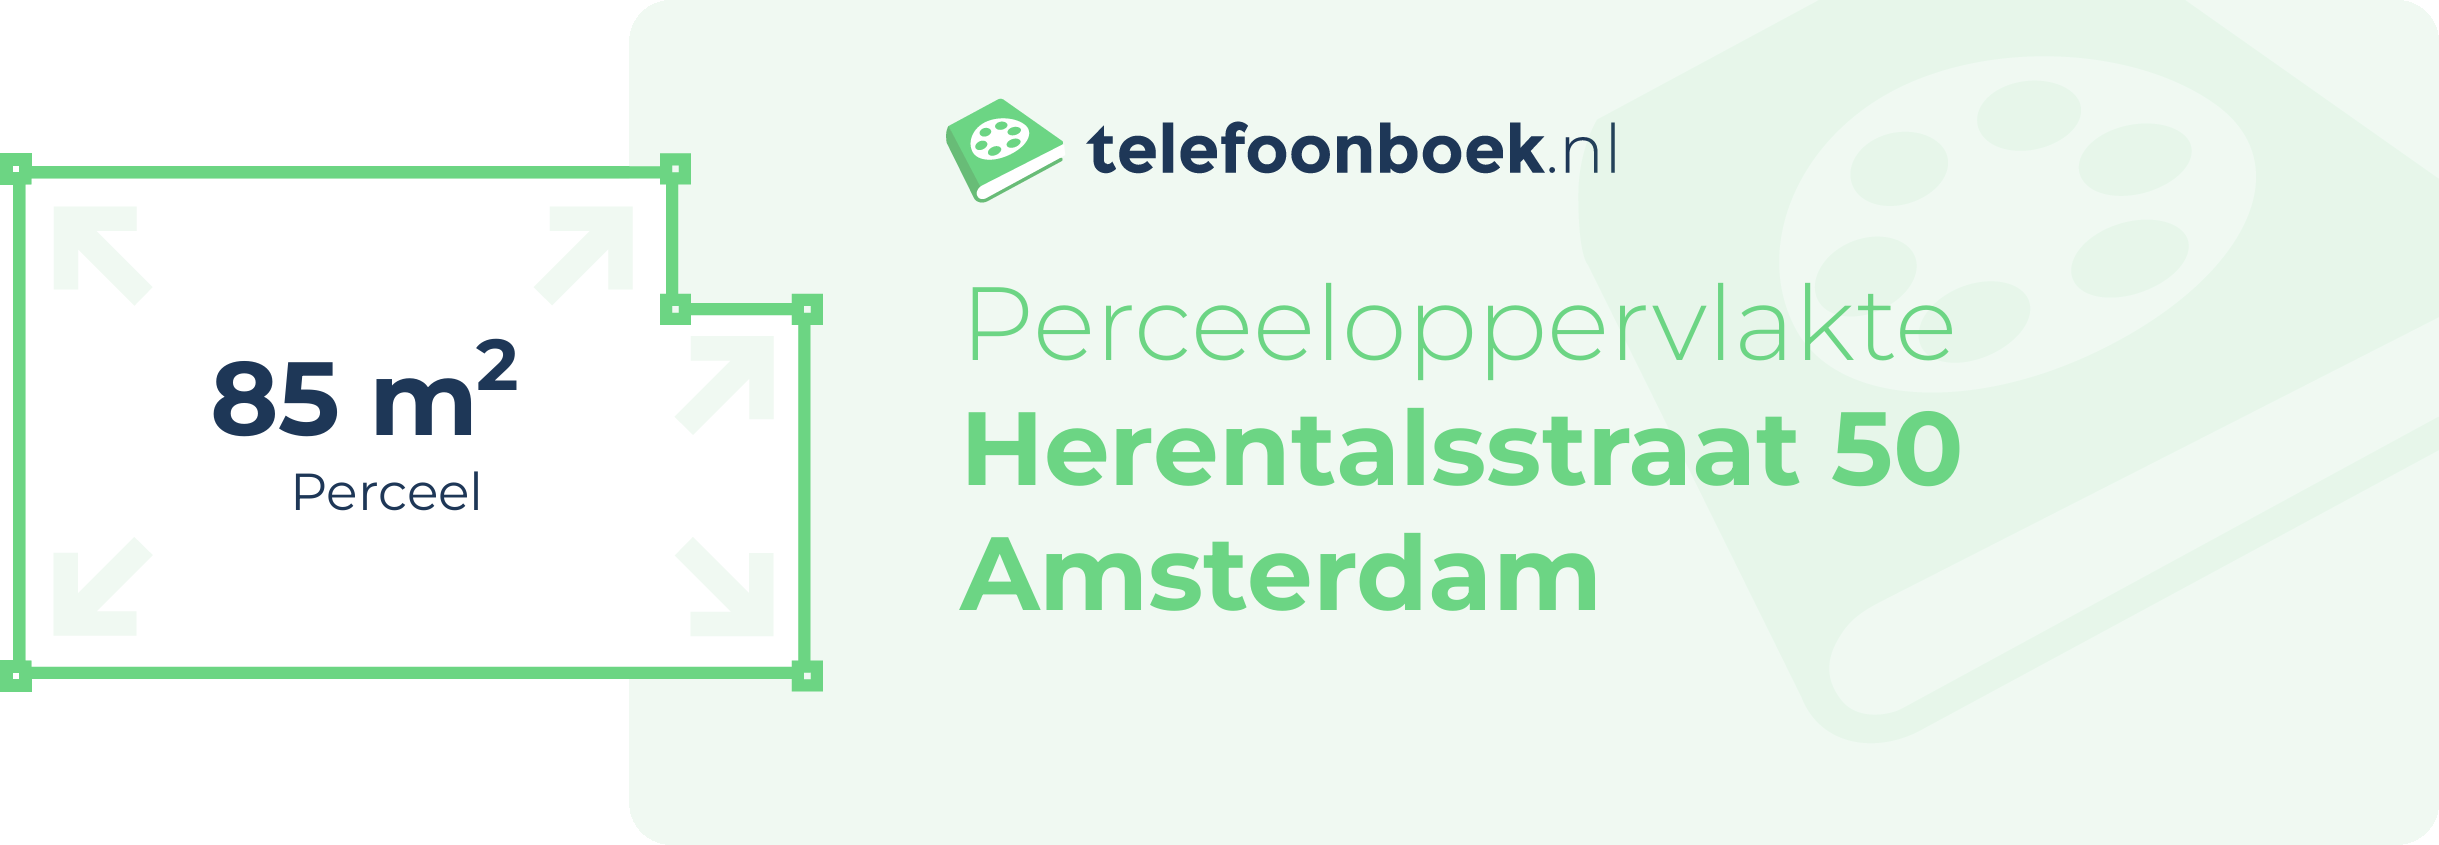 Perceeloppervlakte Herentalsstraat 50 Amsterdam